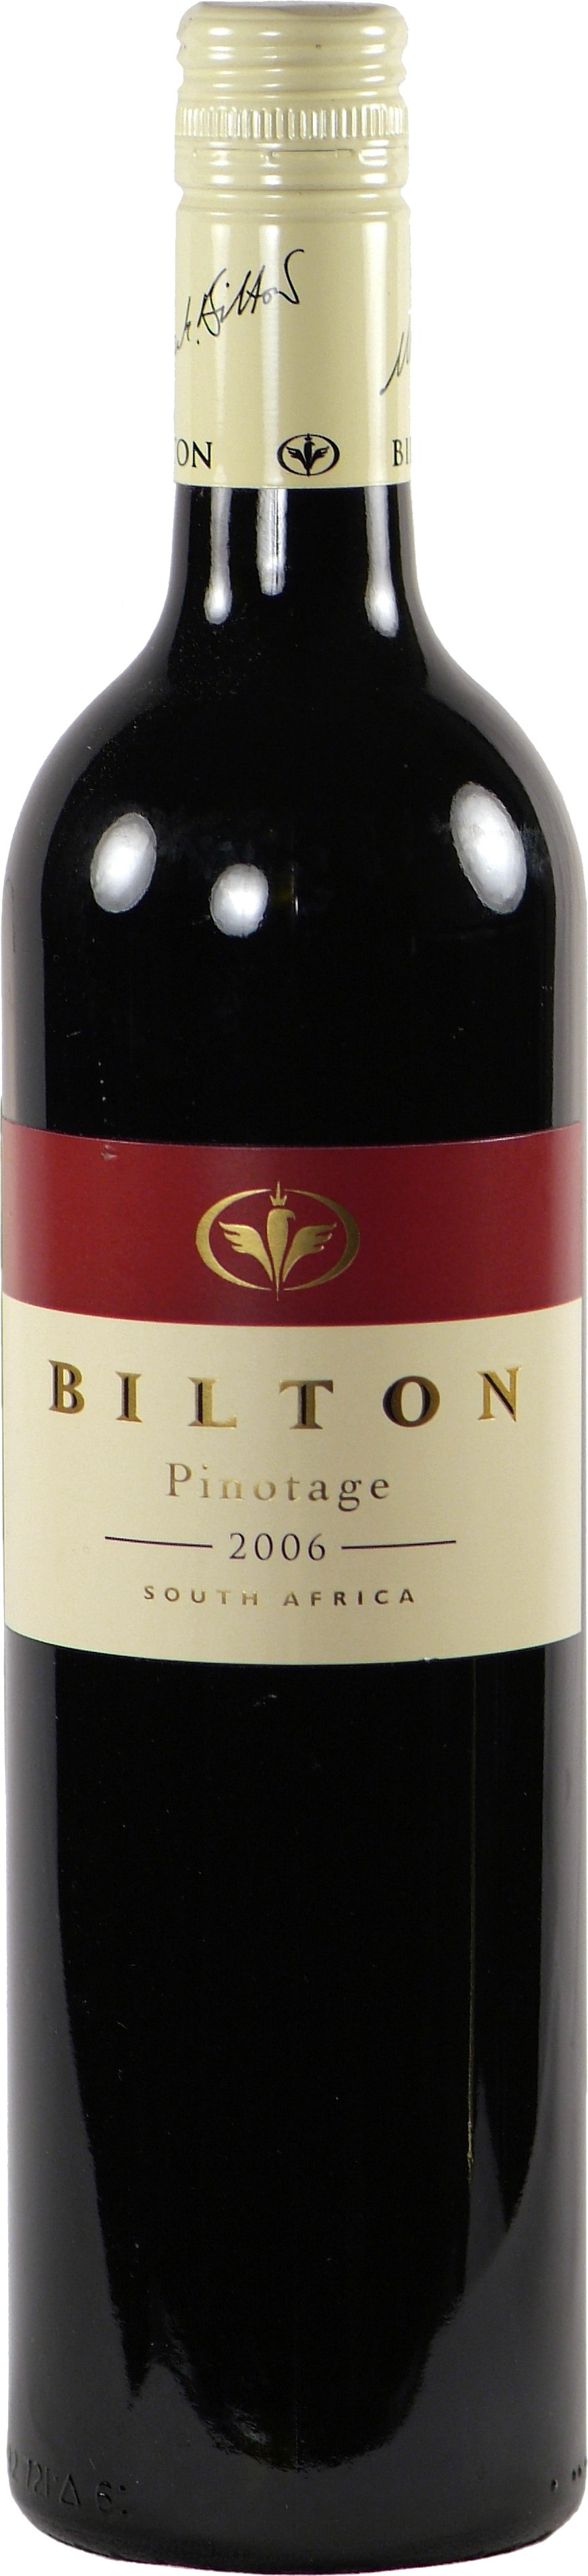 Билтон Пинотаж 2008 - 0,75 л